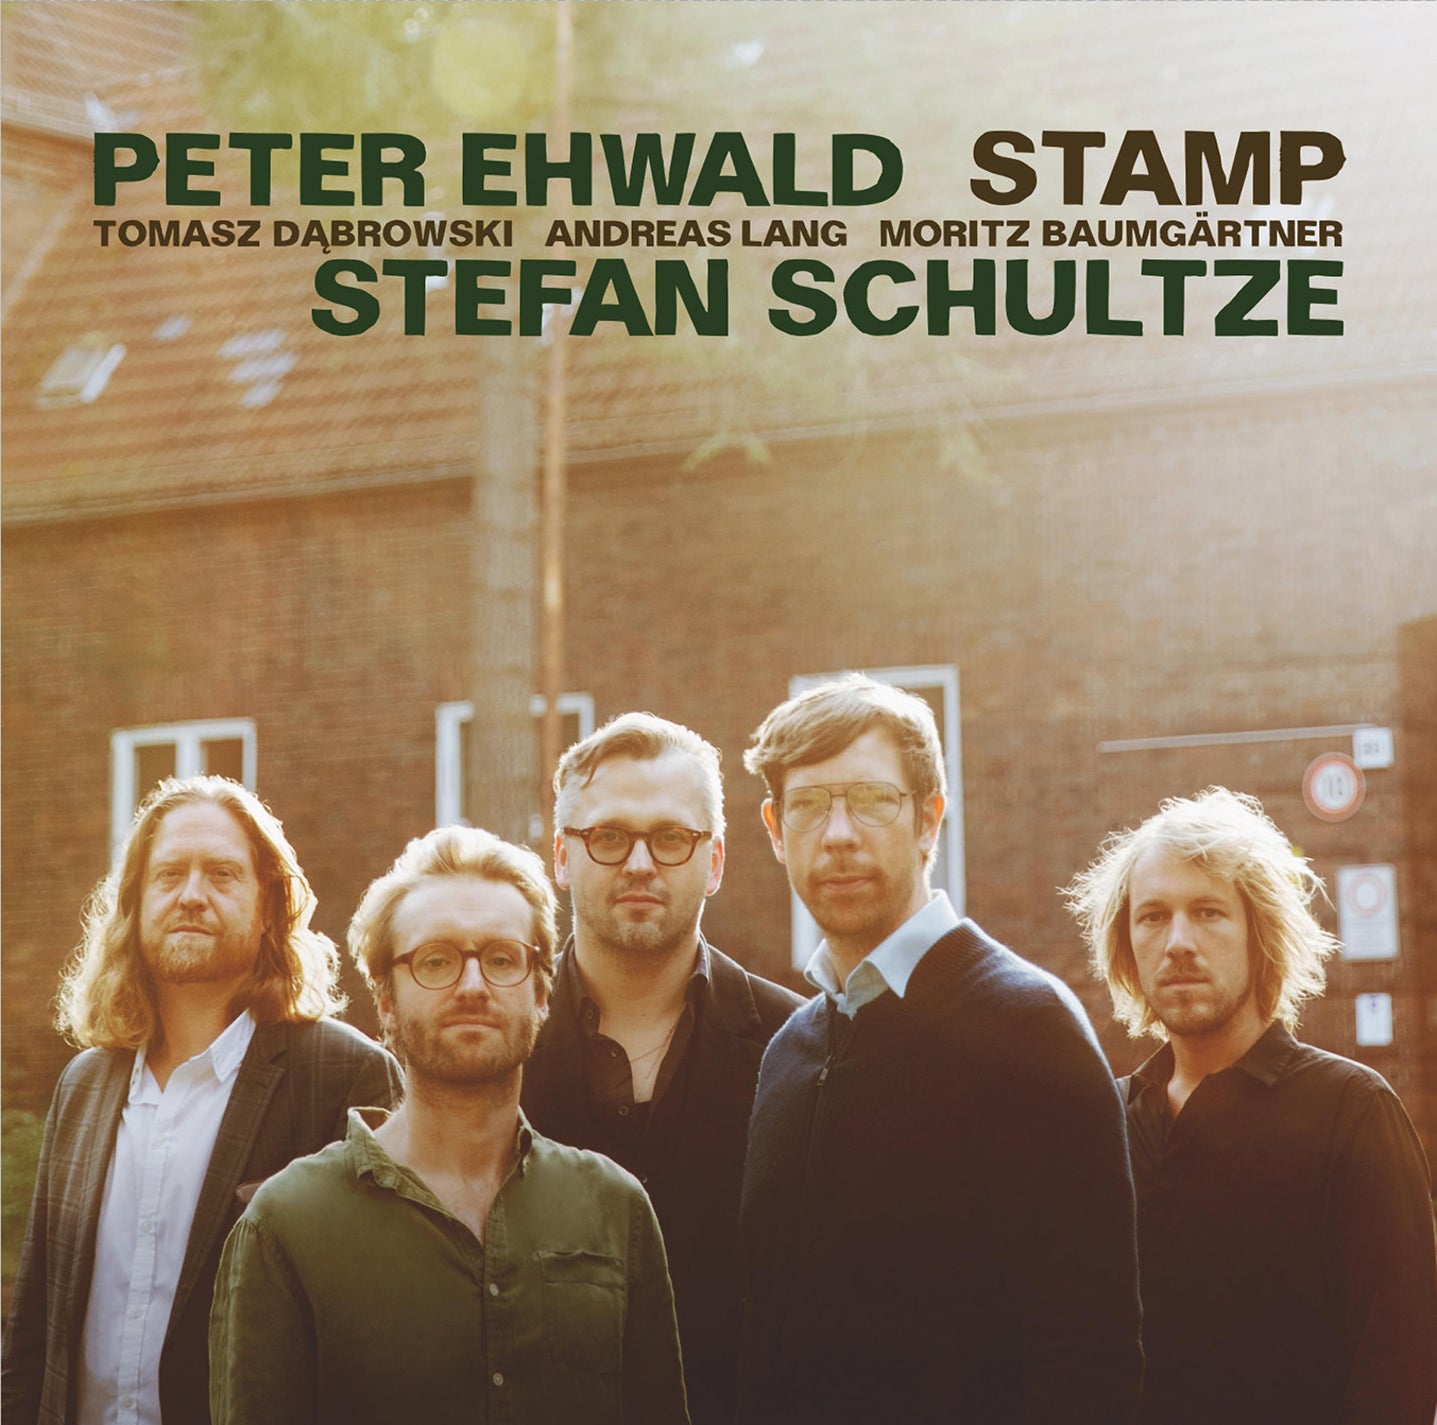 Peter Ehwald & Stefan Schultze: Stamp / Baumgärtner, Lang, Dąbrowski